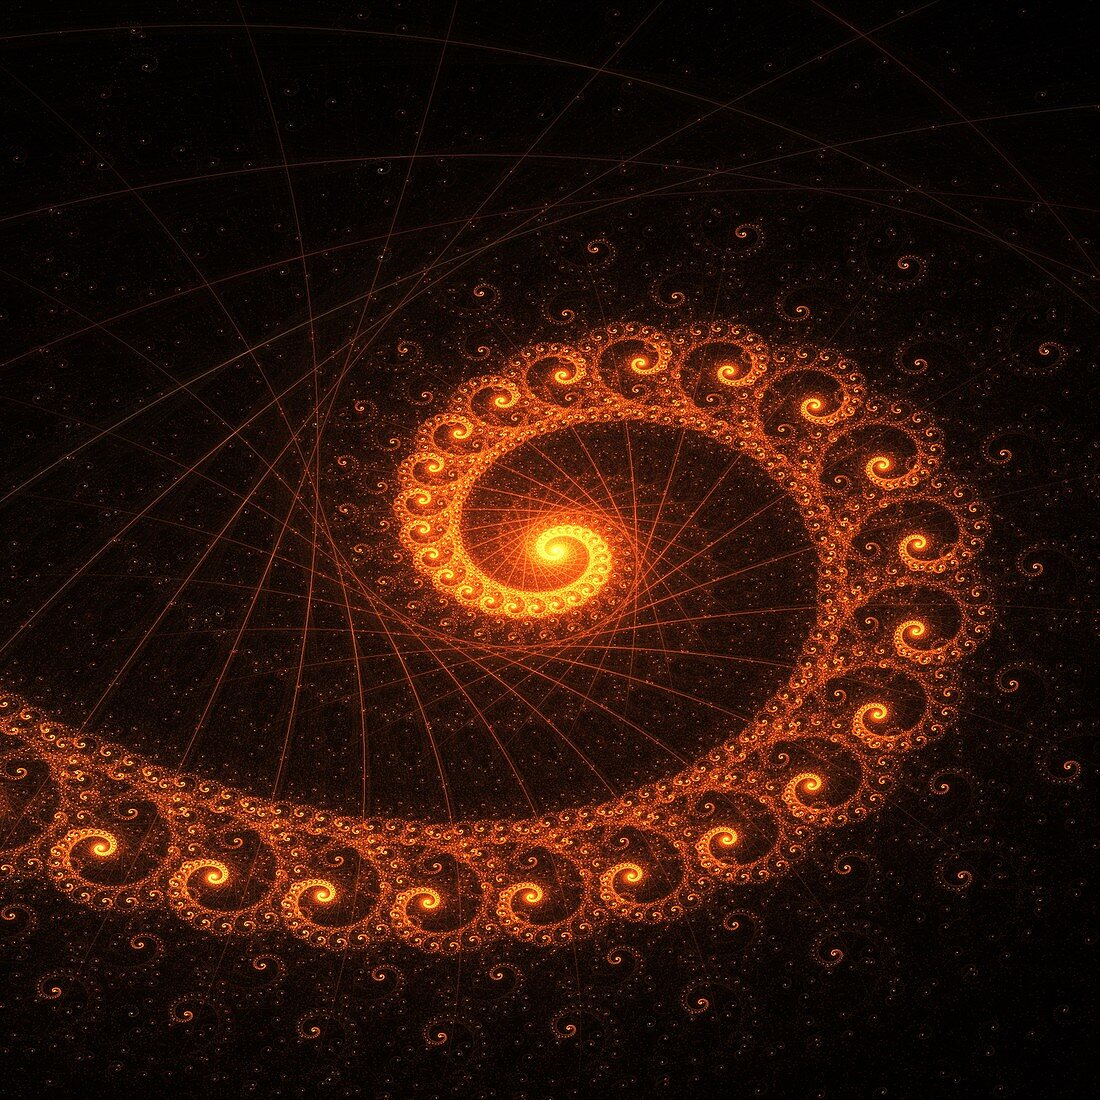 Golden ratio, fractal illustration